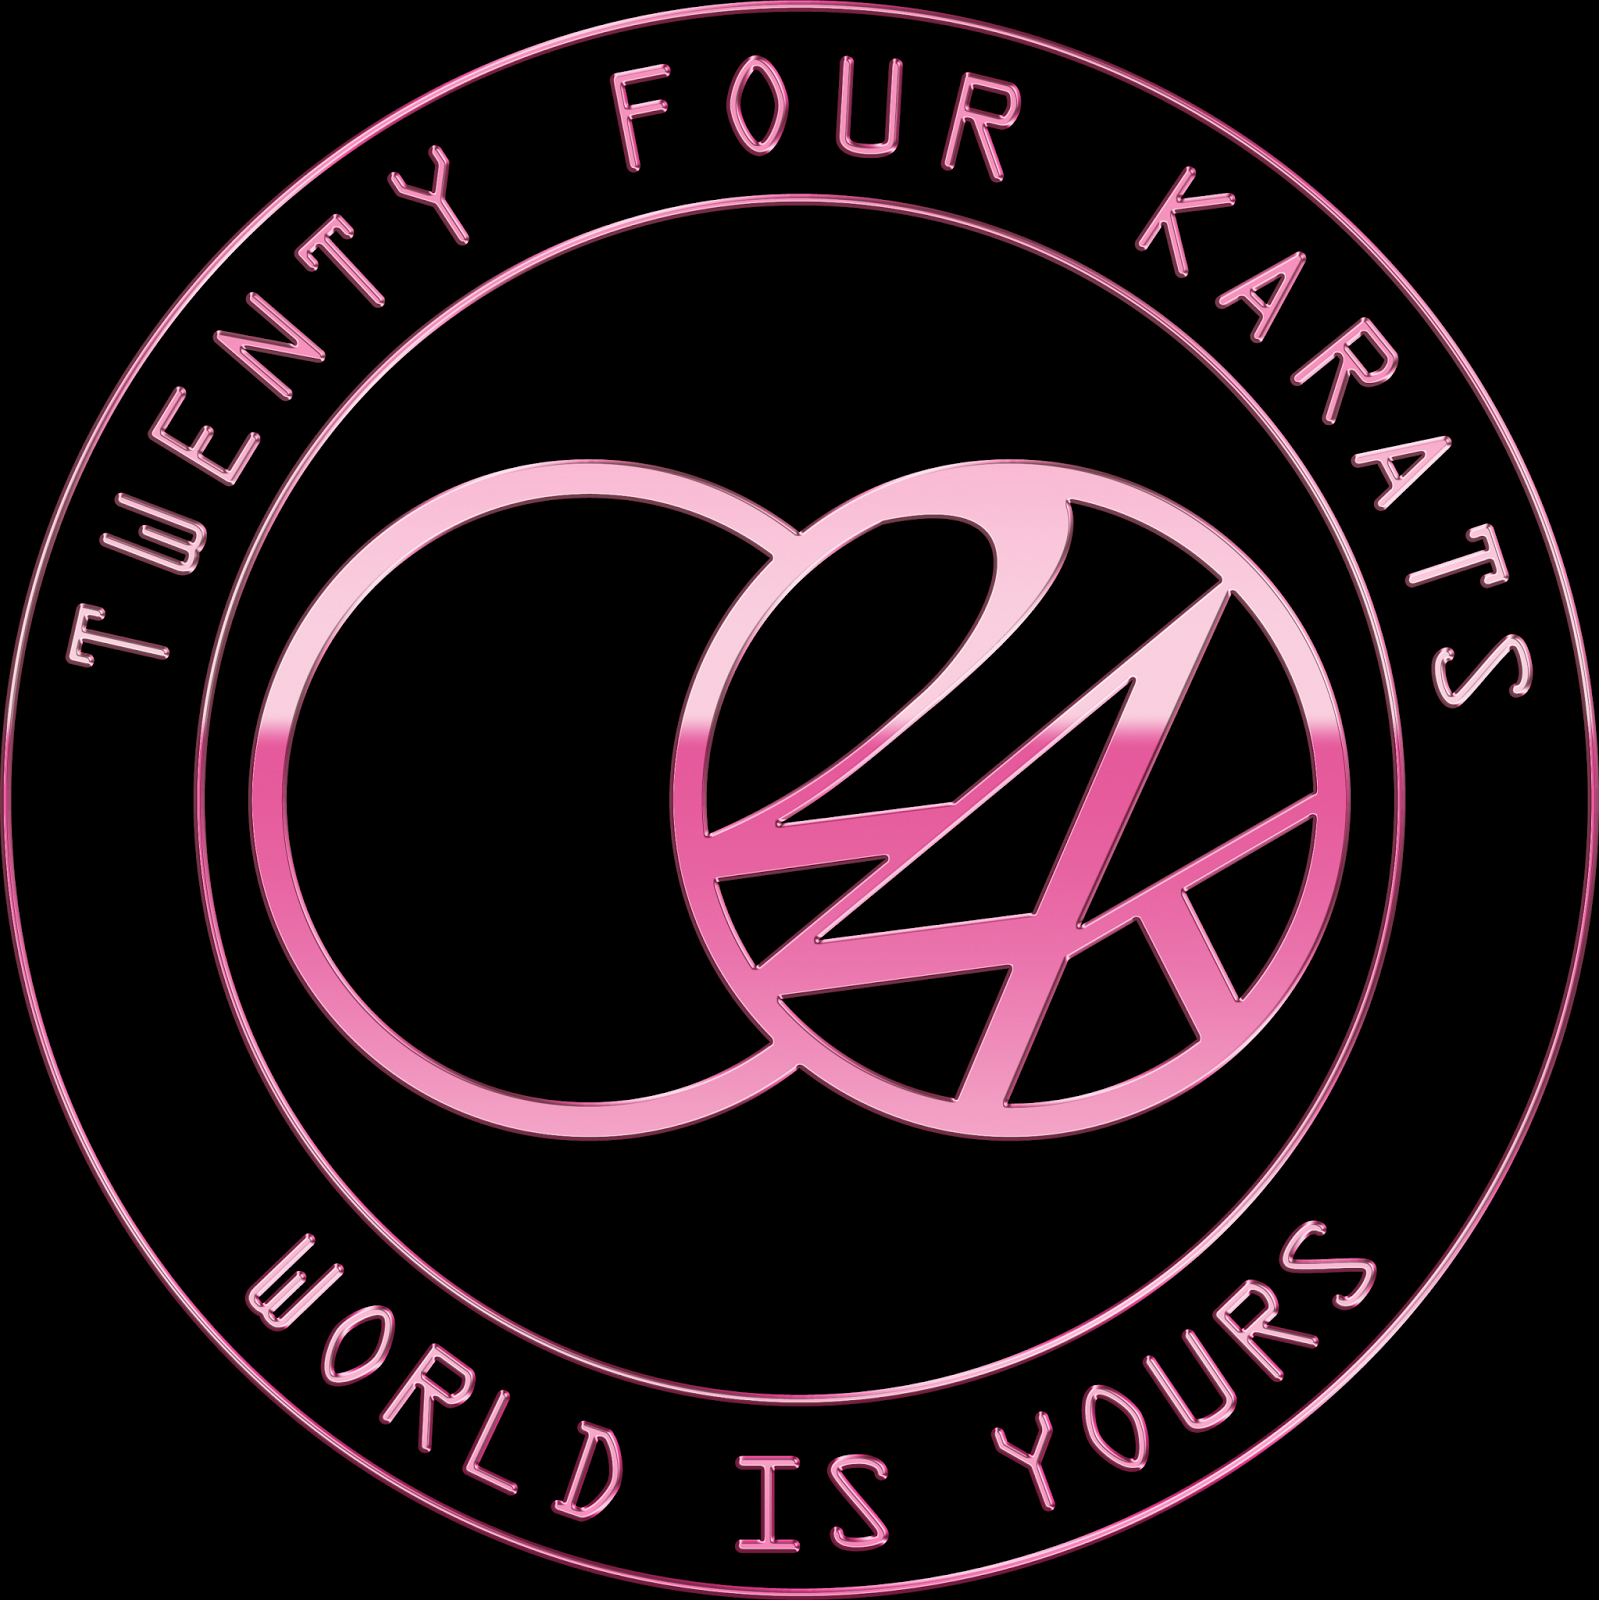 Logodol 全てが高画質 背景透過なアーティストのロゴをお届けするブログ 24world Twenty Four Karats World Is Yours の高画質透過ロゴ５種